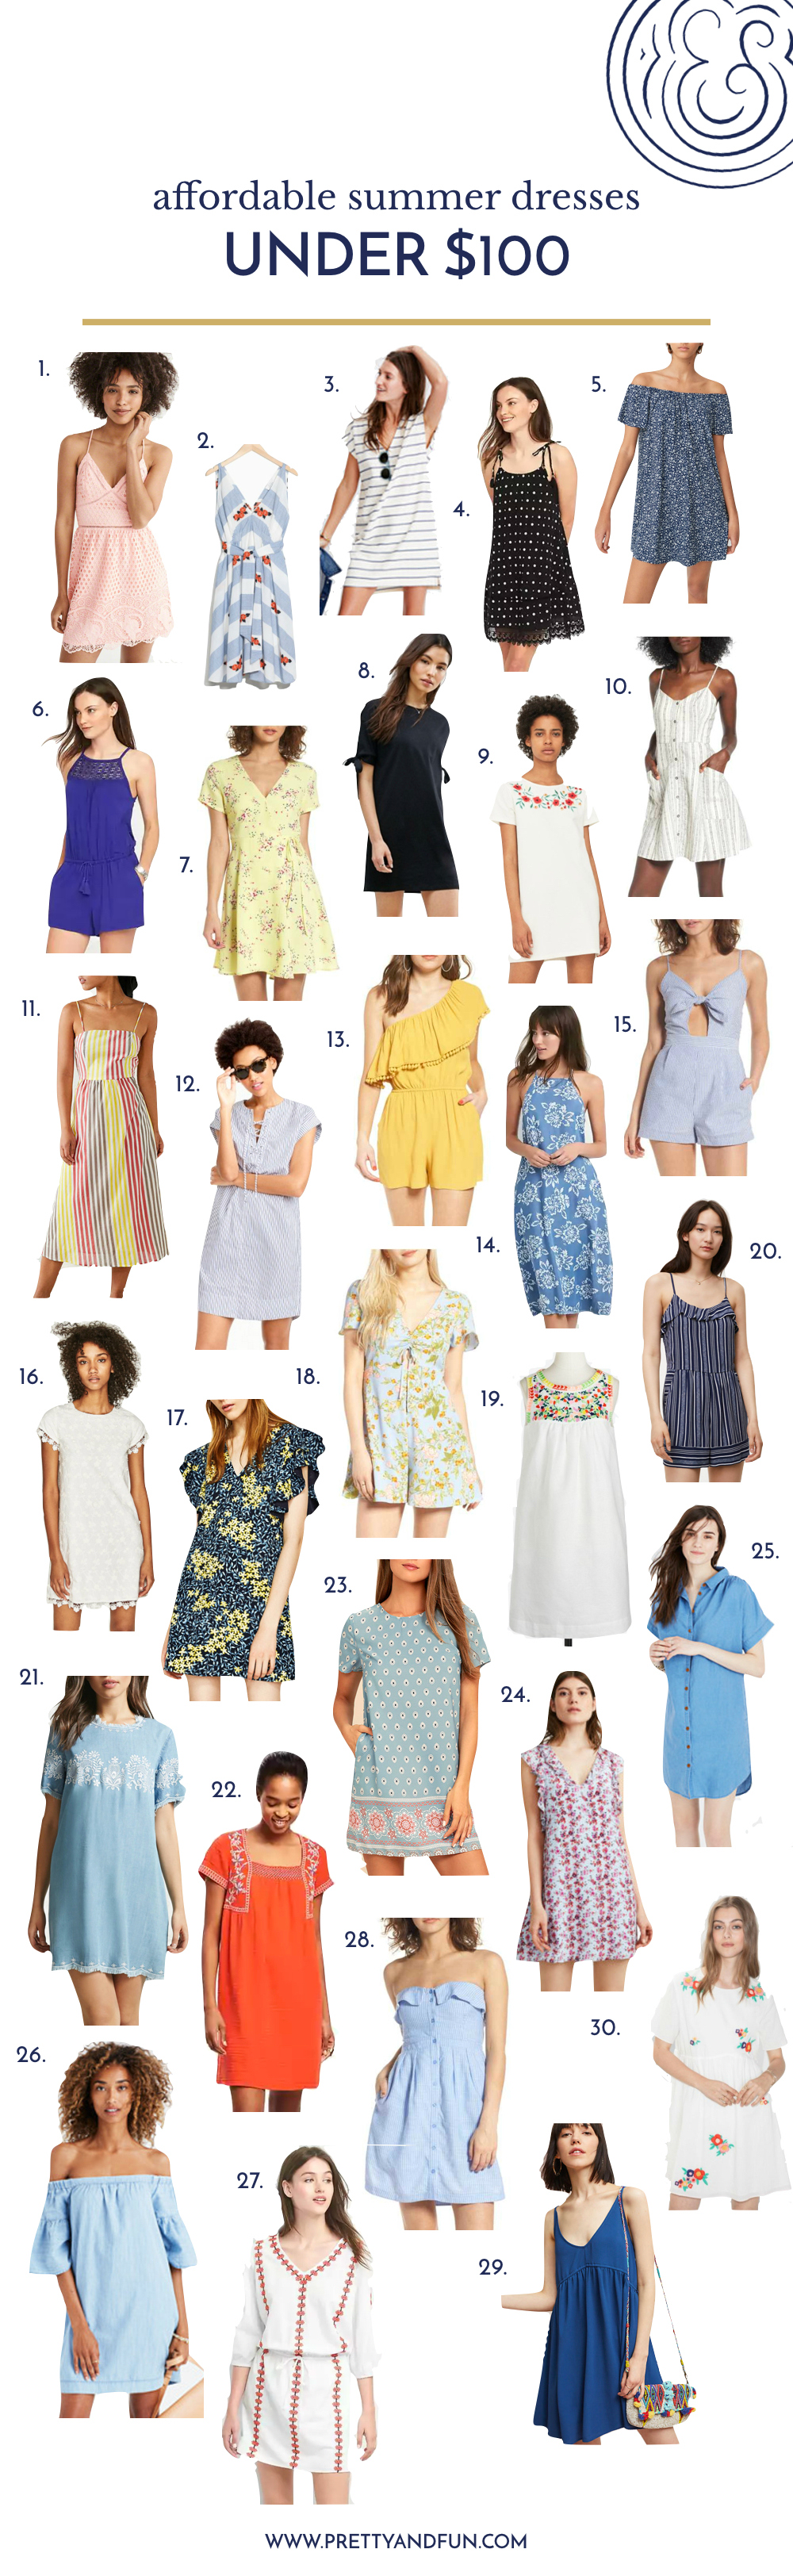 30 Affordable Summer Dresses Under $100.